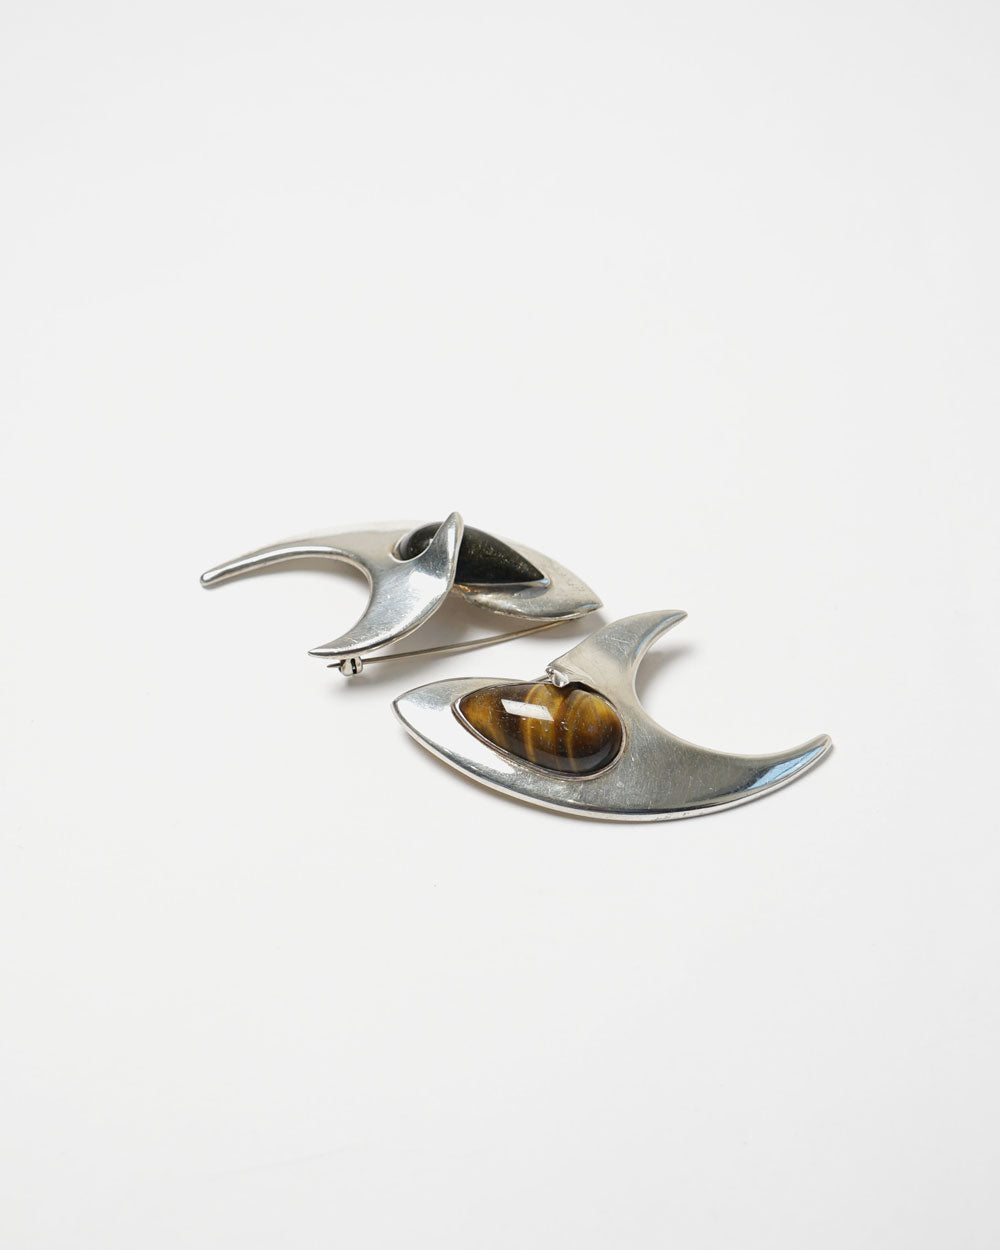 Silver Brooch / Pin w/ Tiger Eye